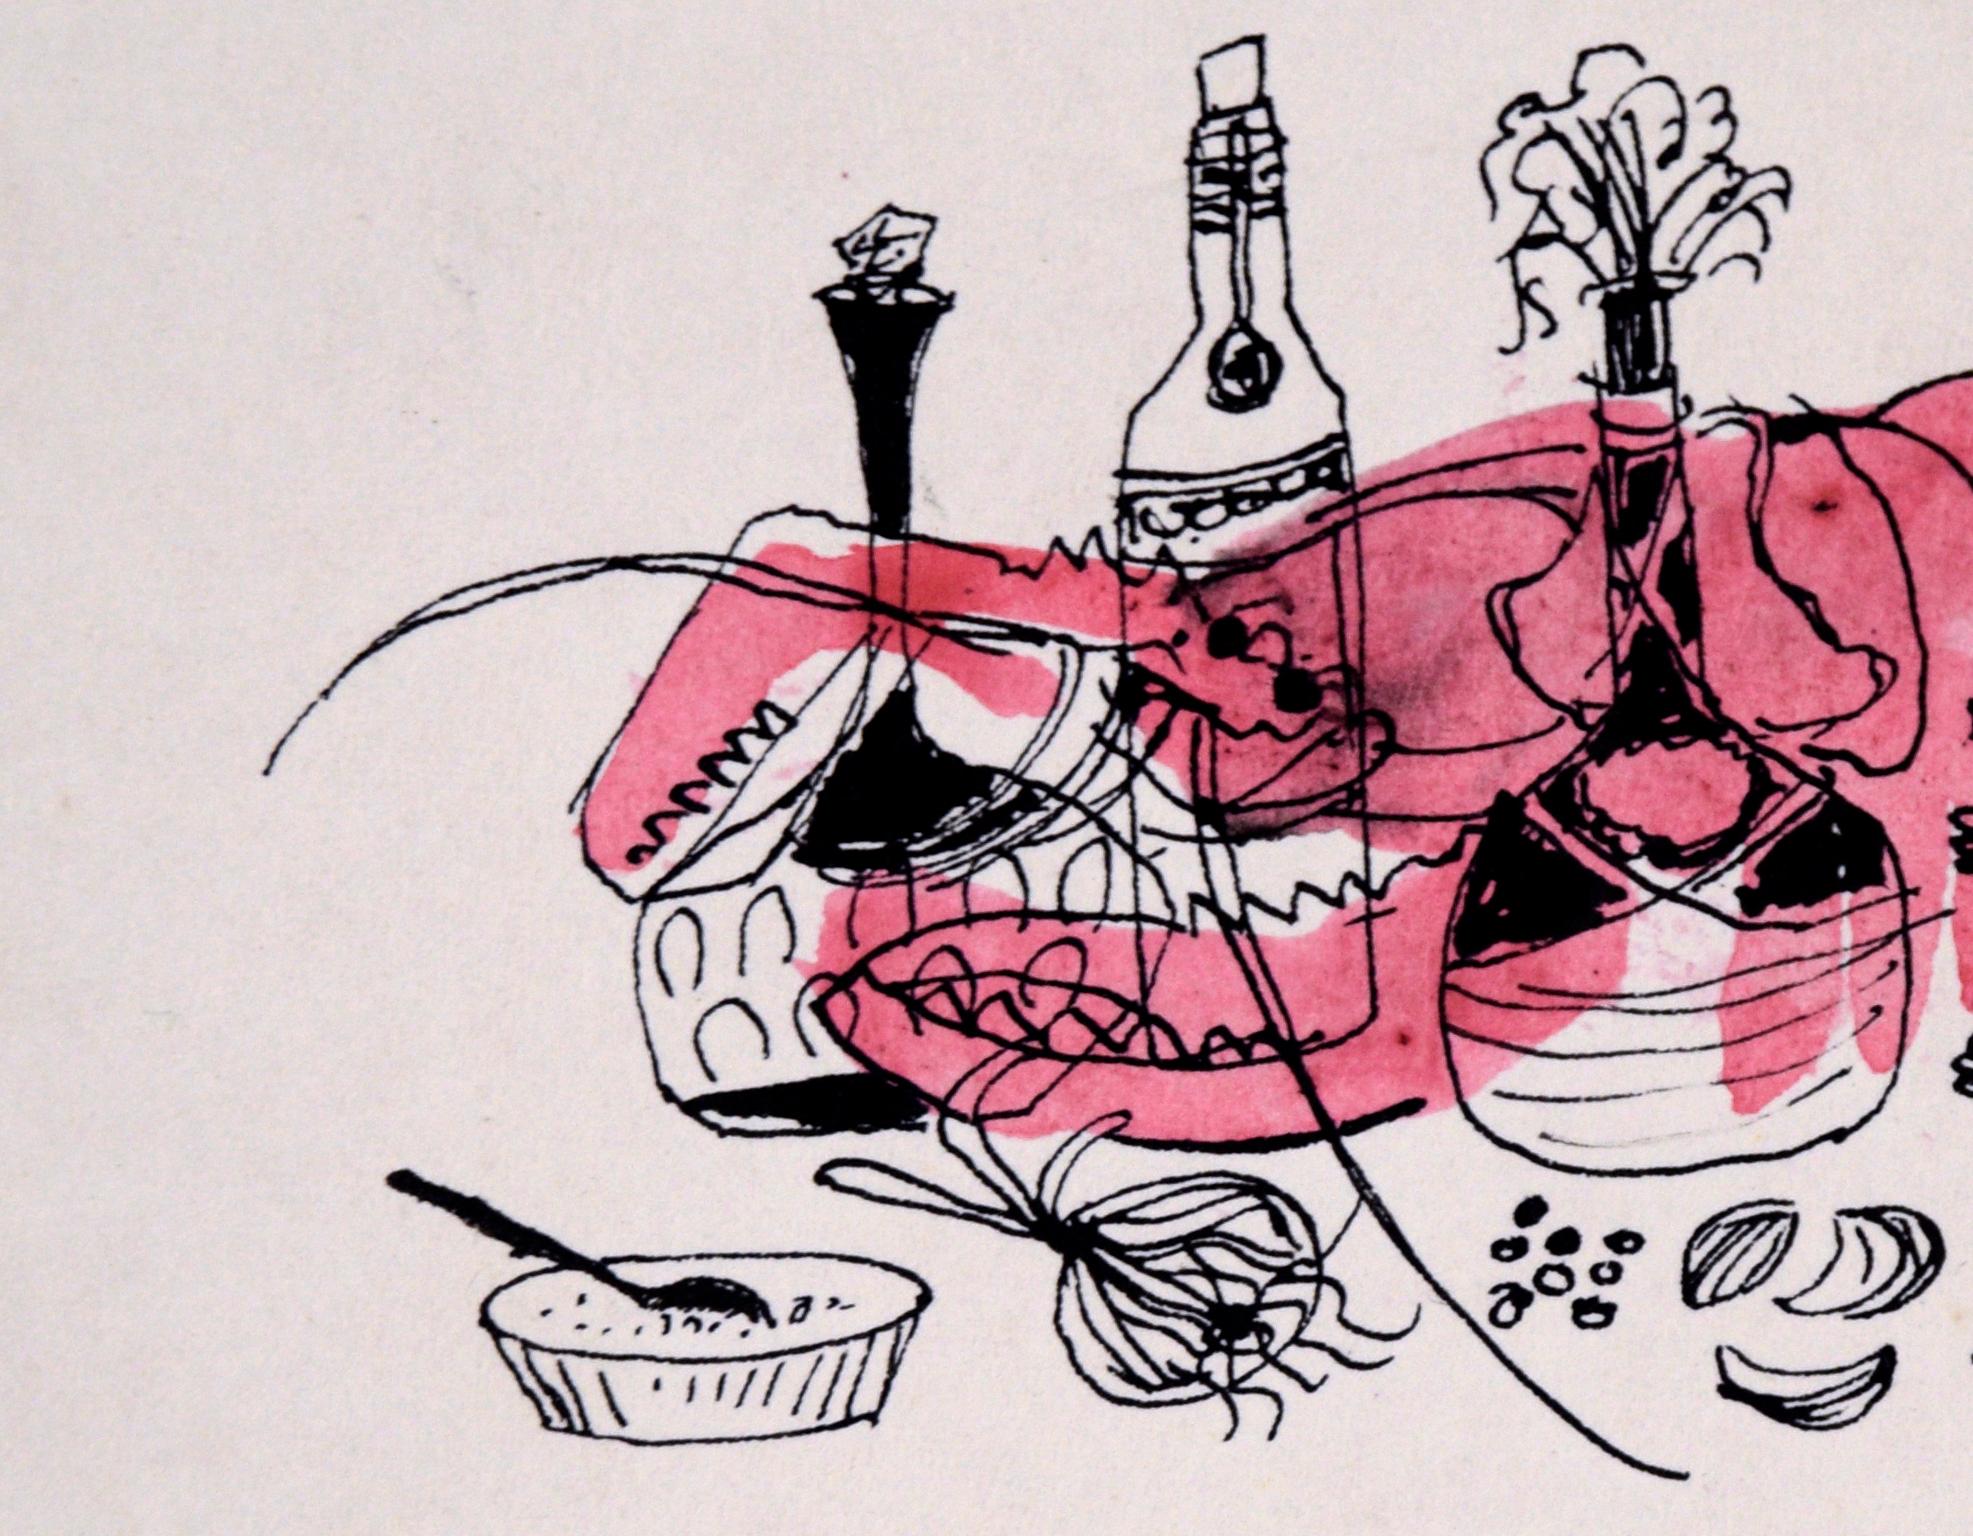 Chef Lobster - Illustration vintage à l'encre et à l'aquarelle - Art de Irene Pattinson